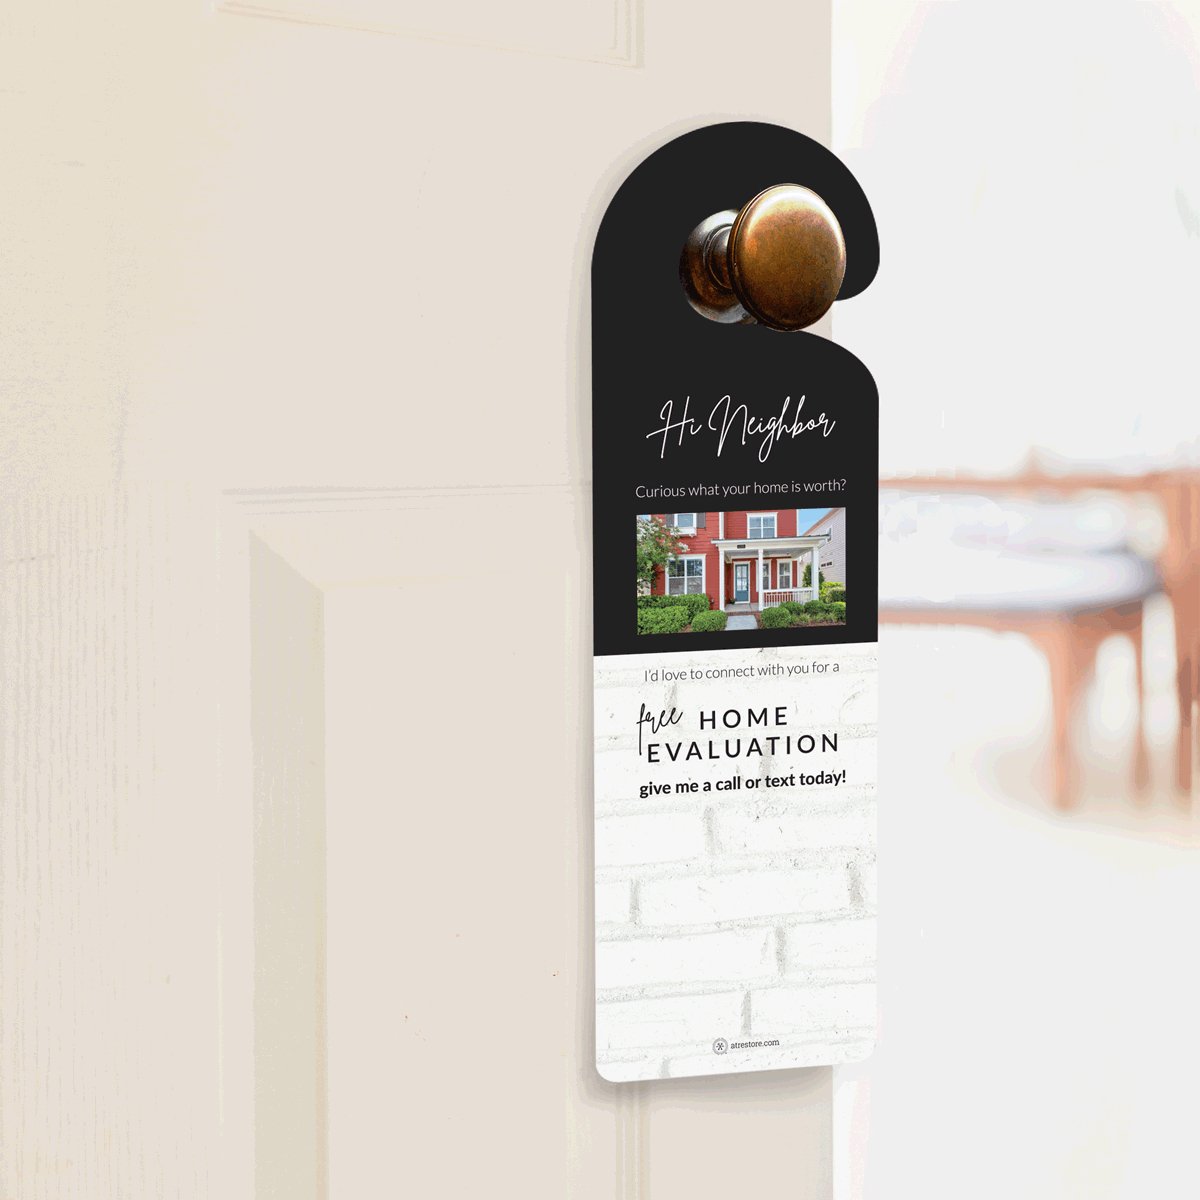 Custom Paper Door Hangers - All Things Real Estate